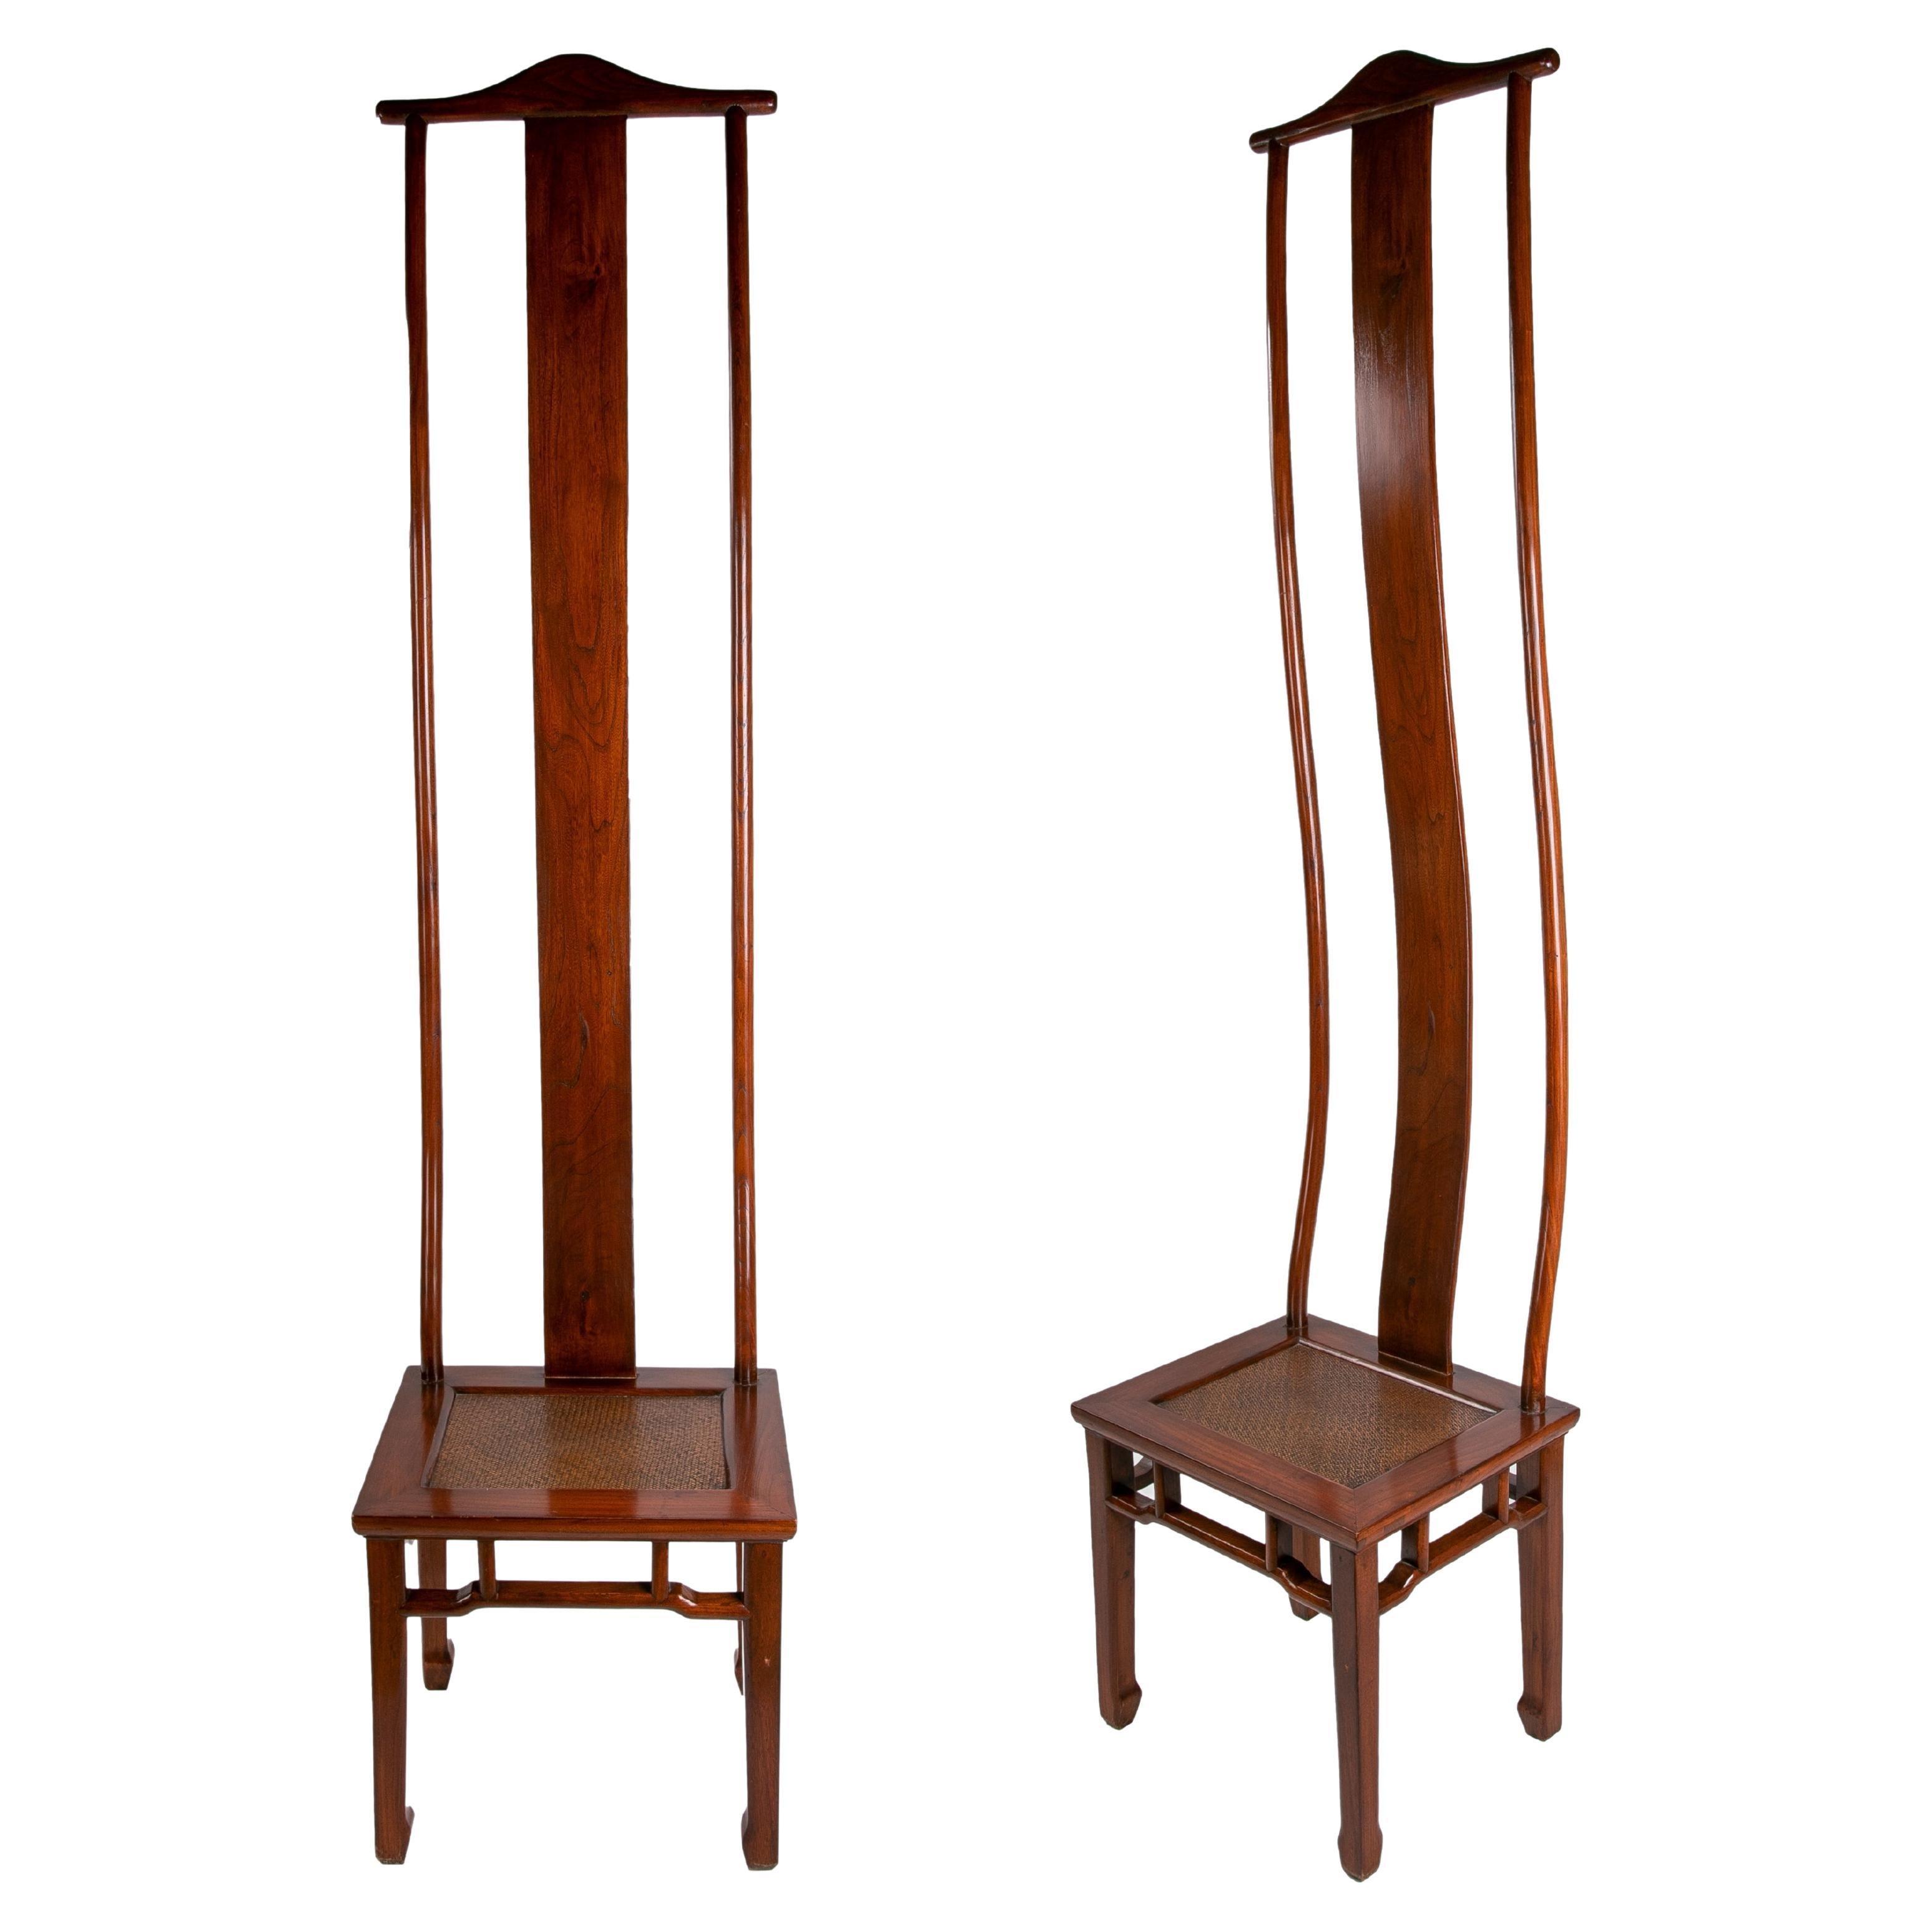 Paar Holzstühle im orientalischen Stil mit sehr hohen Rückenlehnen